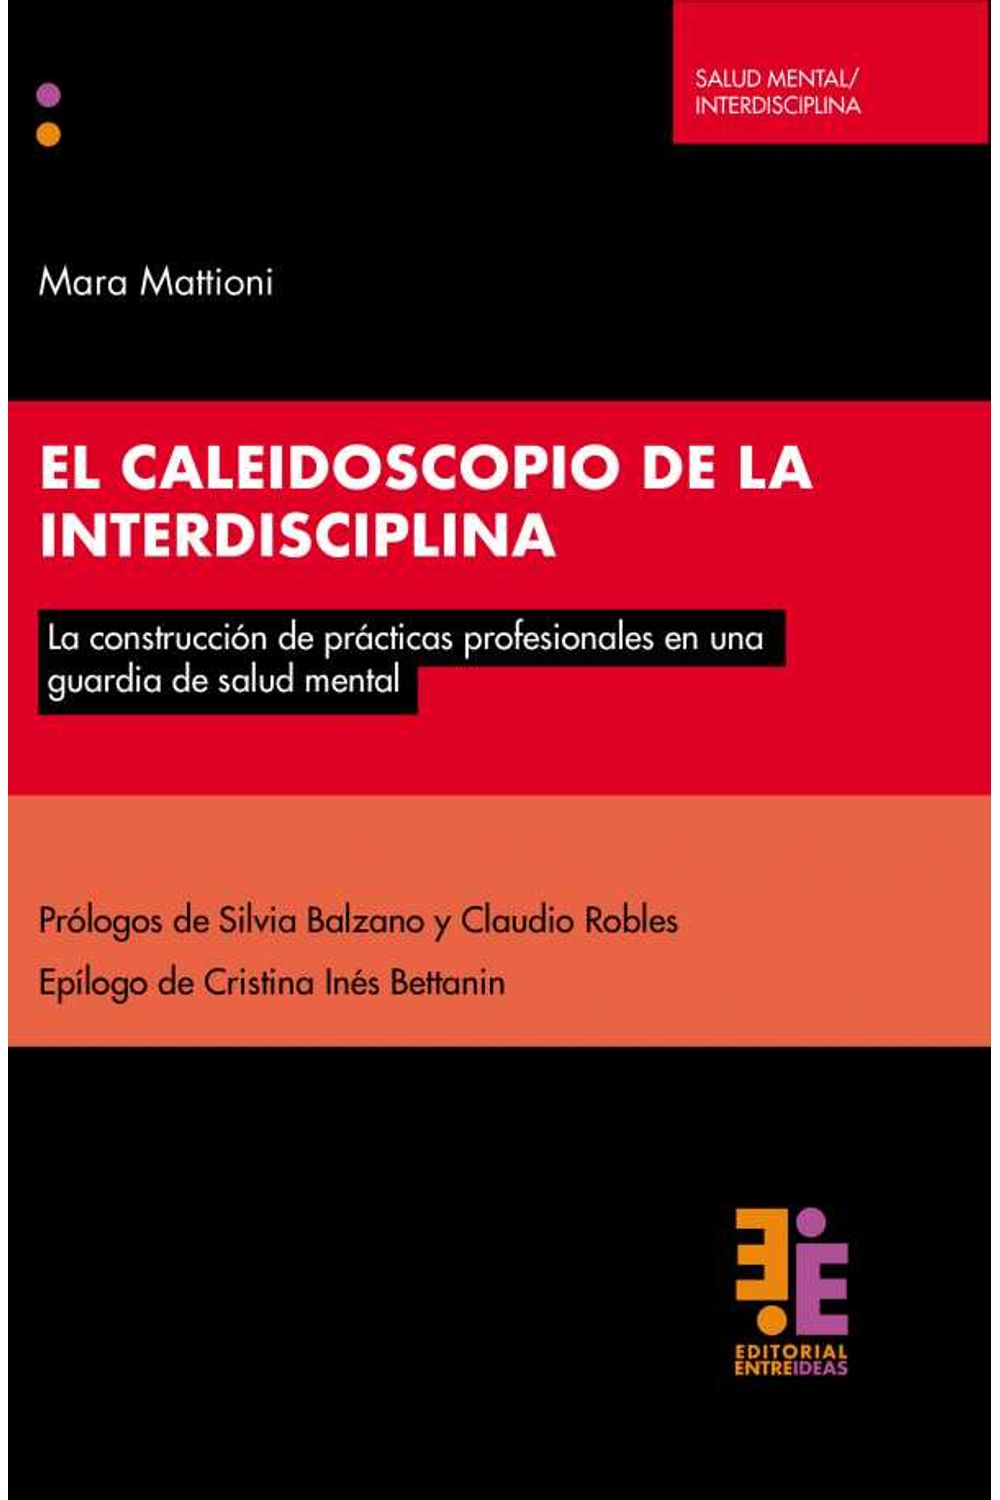 bw-el-caleidoscopio-de-la-interdisciplina-editorial-entreideas-9789874760876